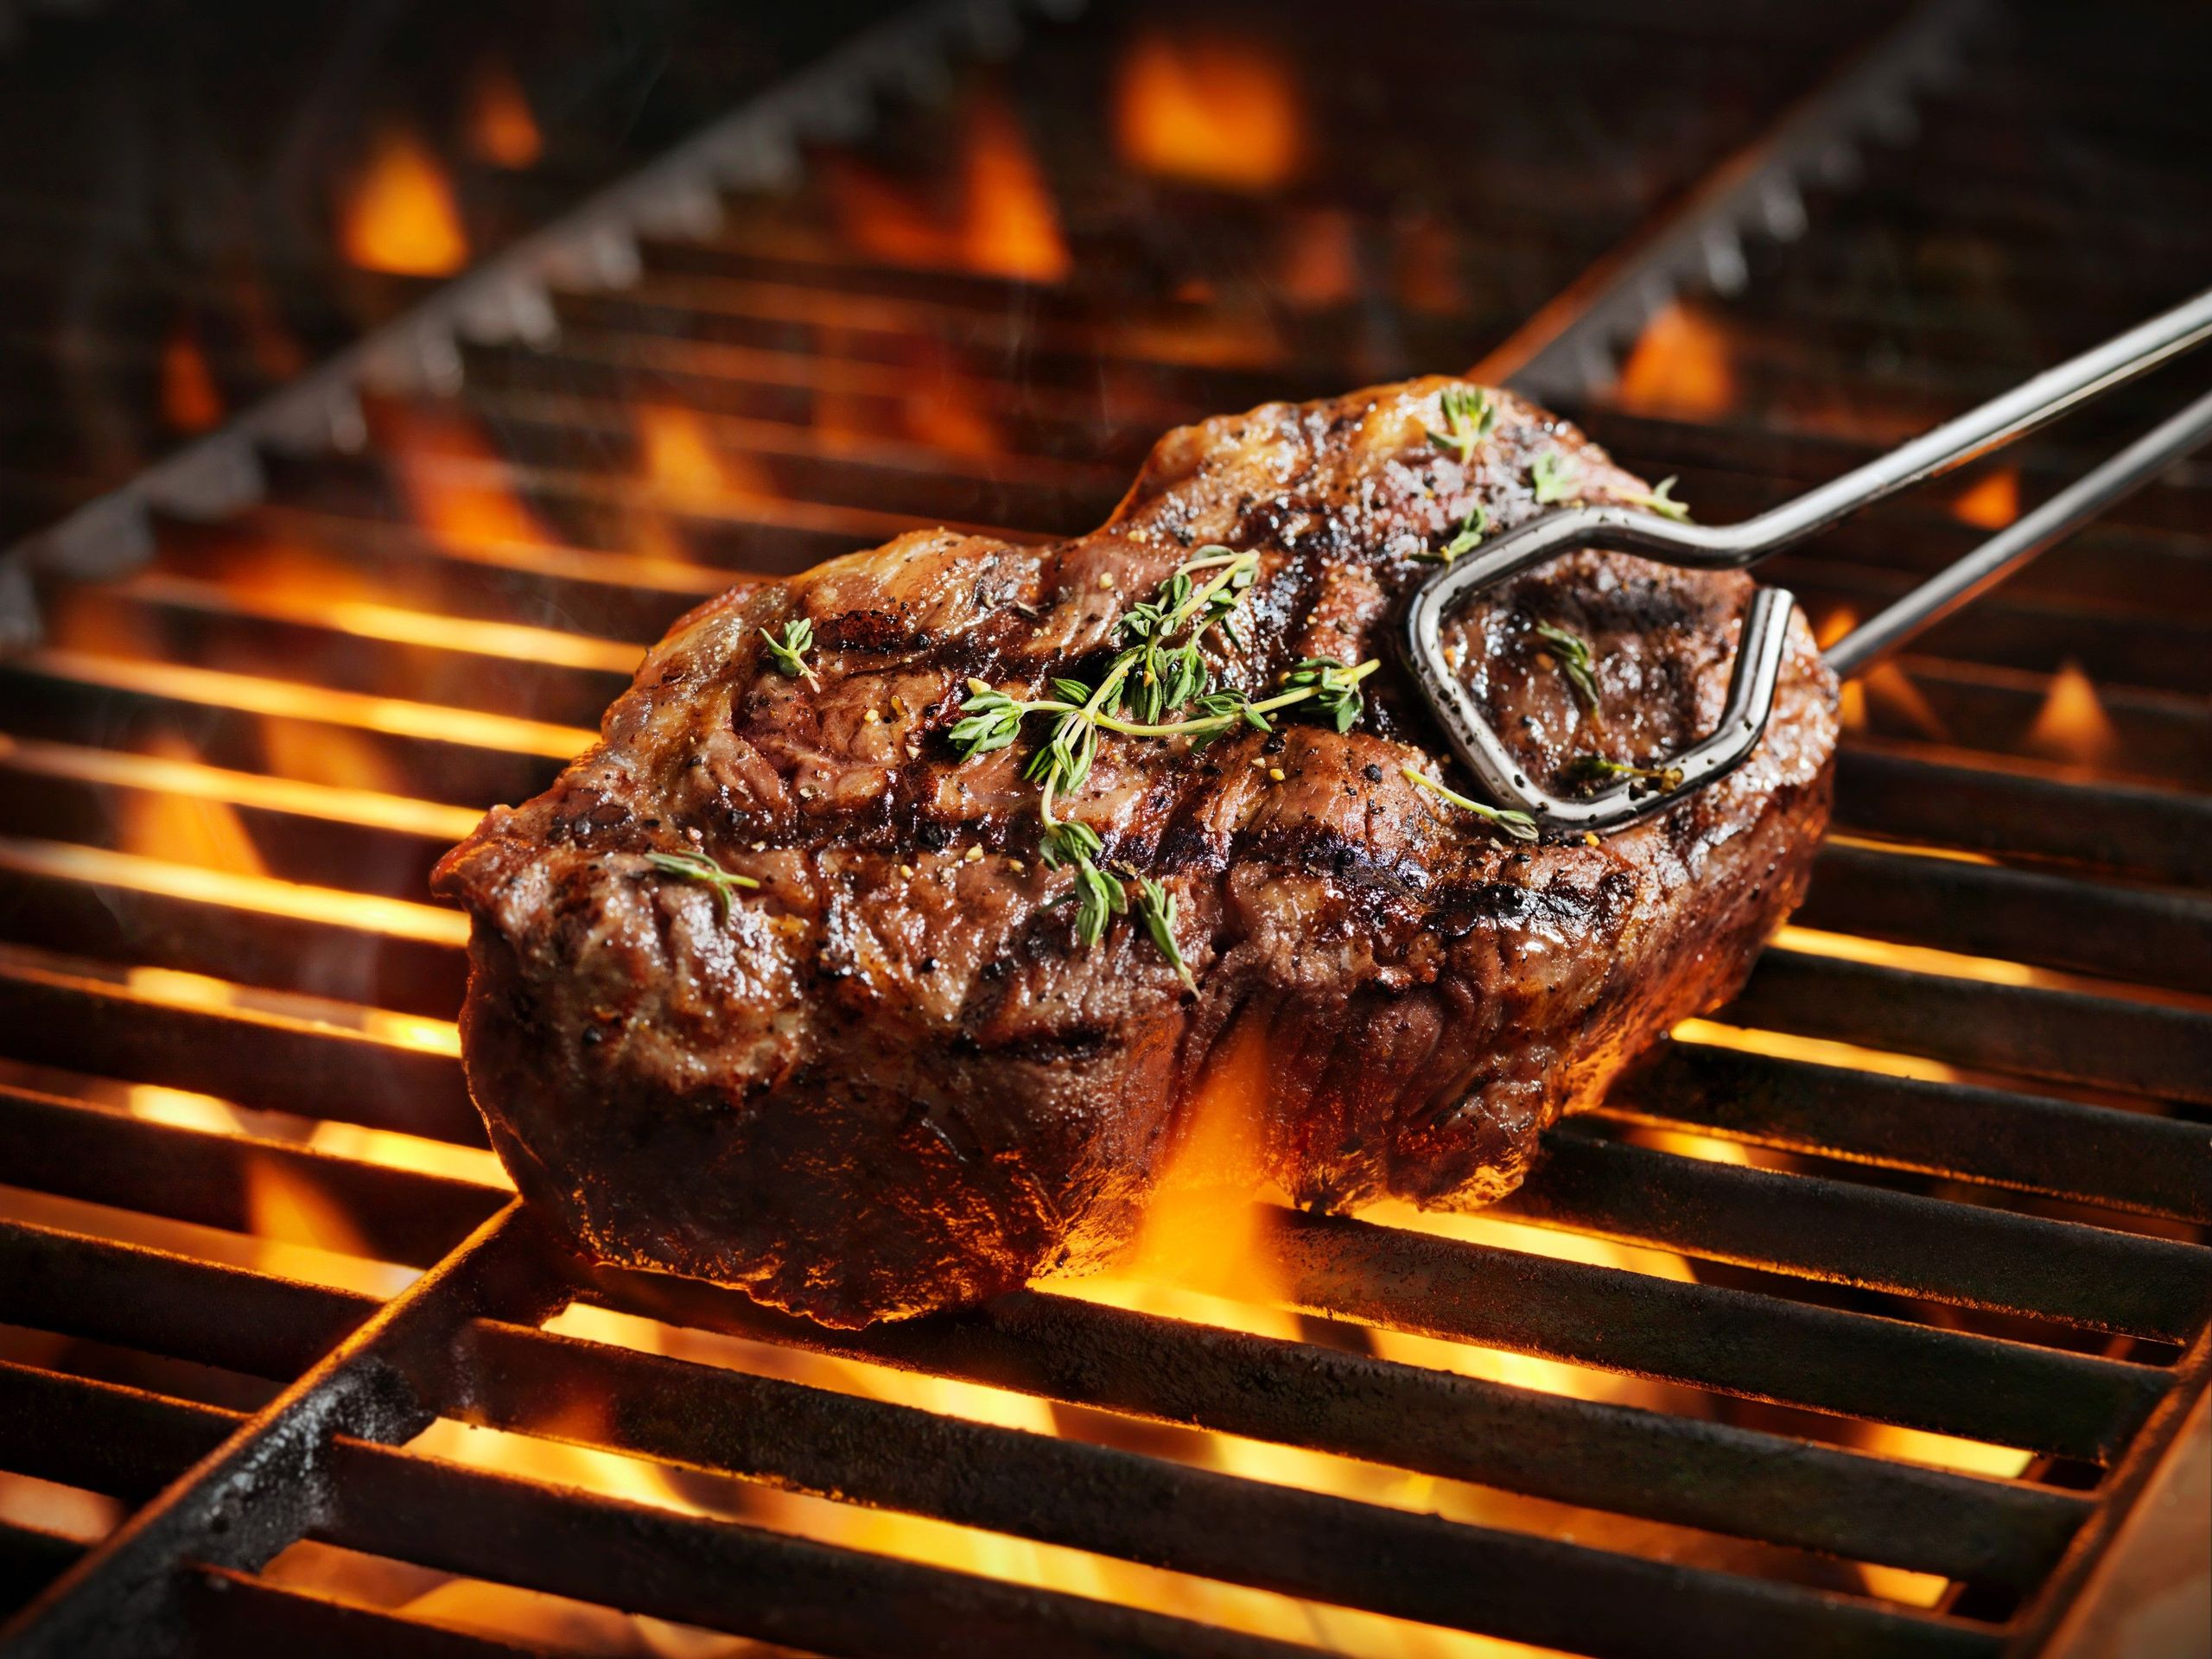 SHR_Food_BBQ Sirloin Steak_iStock-972852490.jpeg